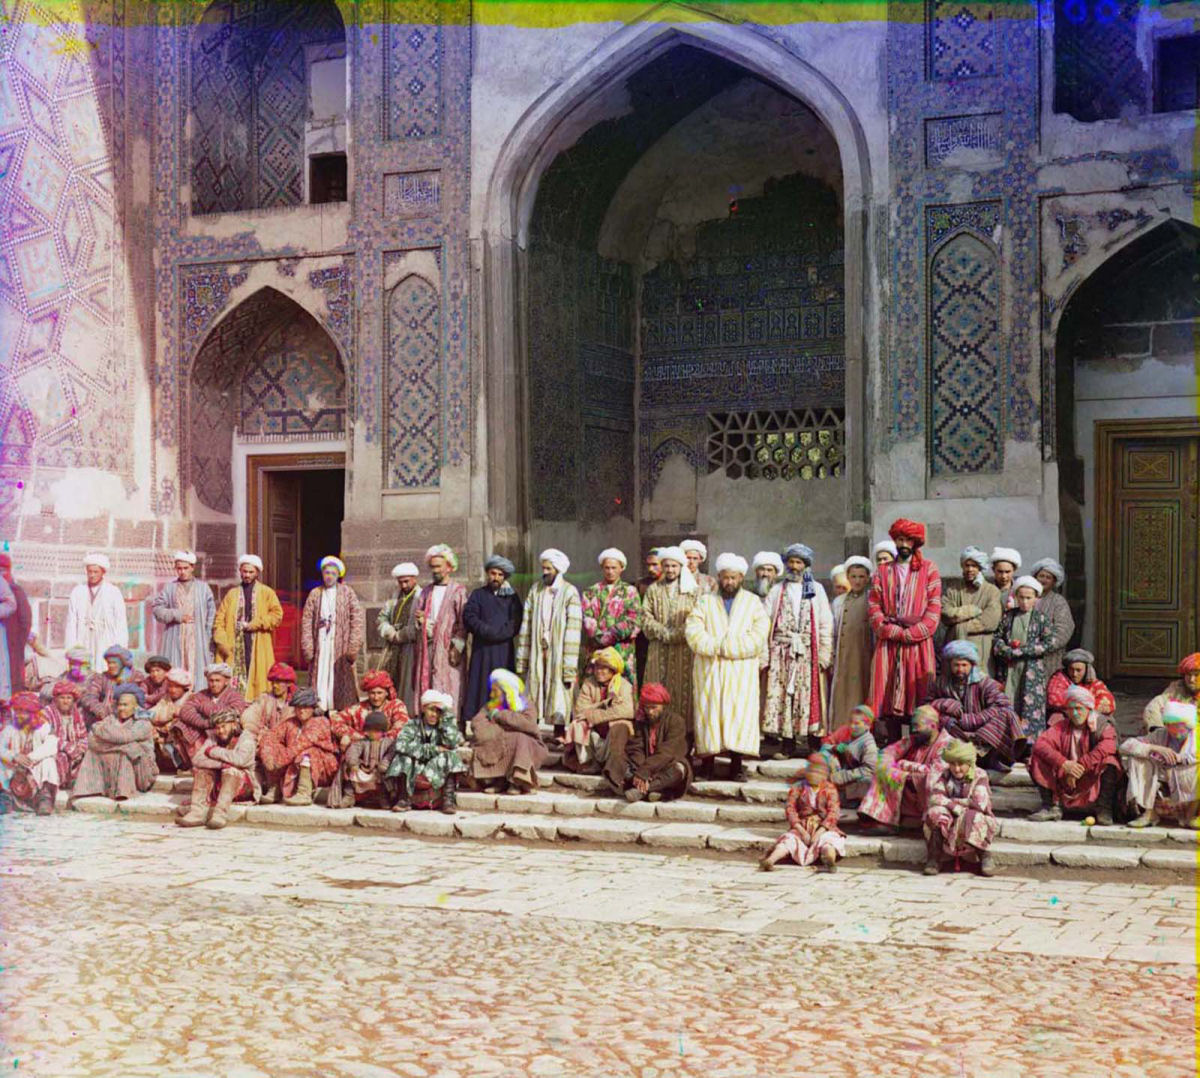 O Uzbequistão da era czarista capturado em raras fotos coloridas, entre 1907 e 1911 06